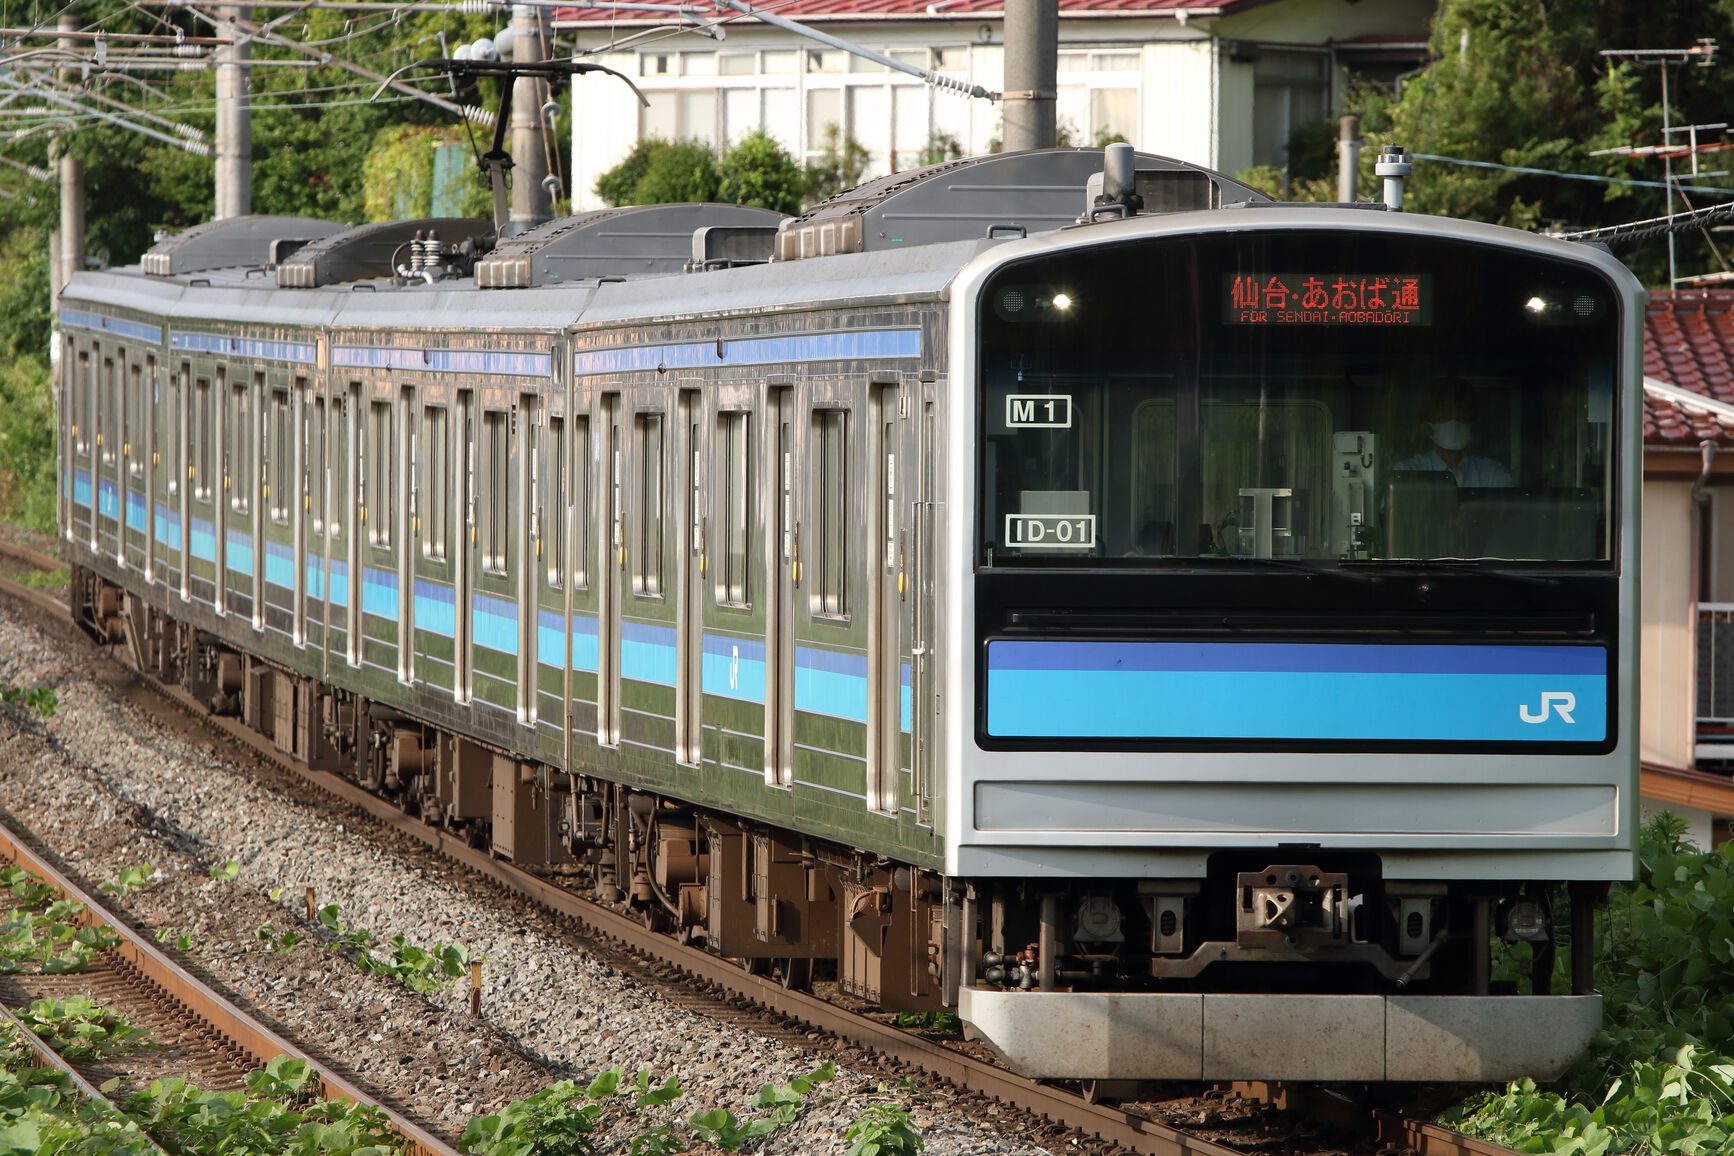 2021-07-23 仙台遠征2日目 仙石線 東北本線撮影 · Hiroto's train photo blog